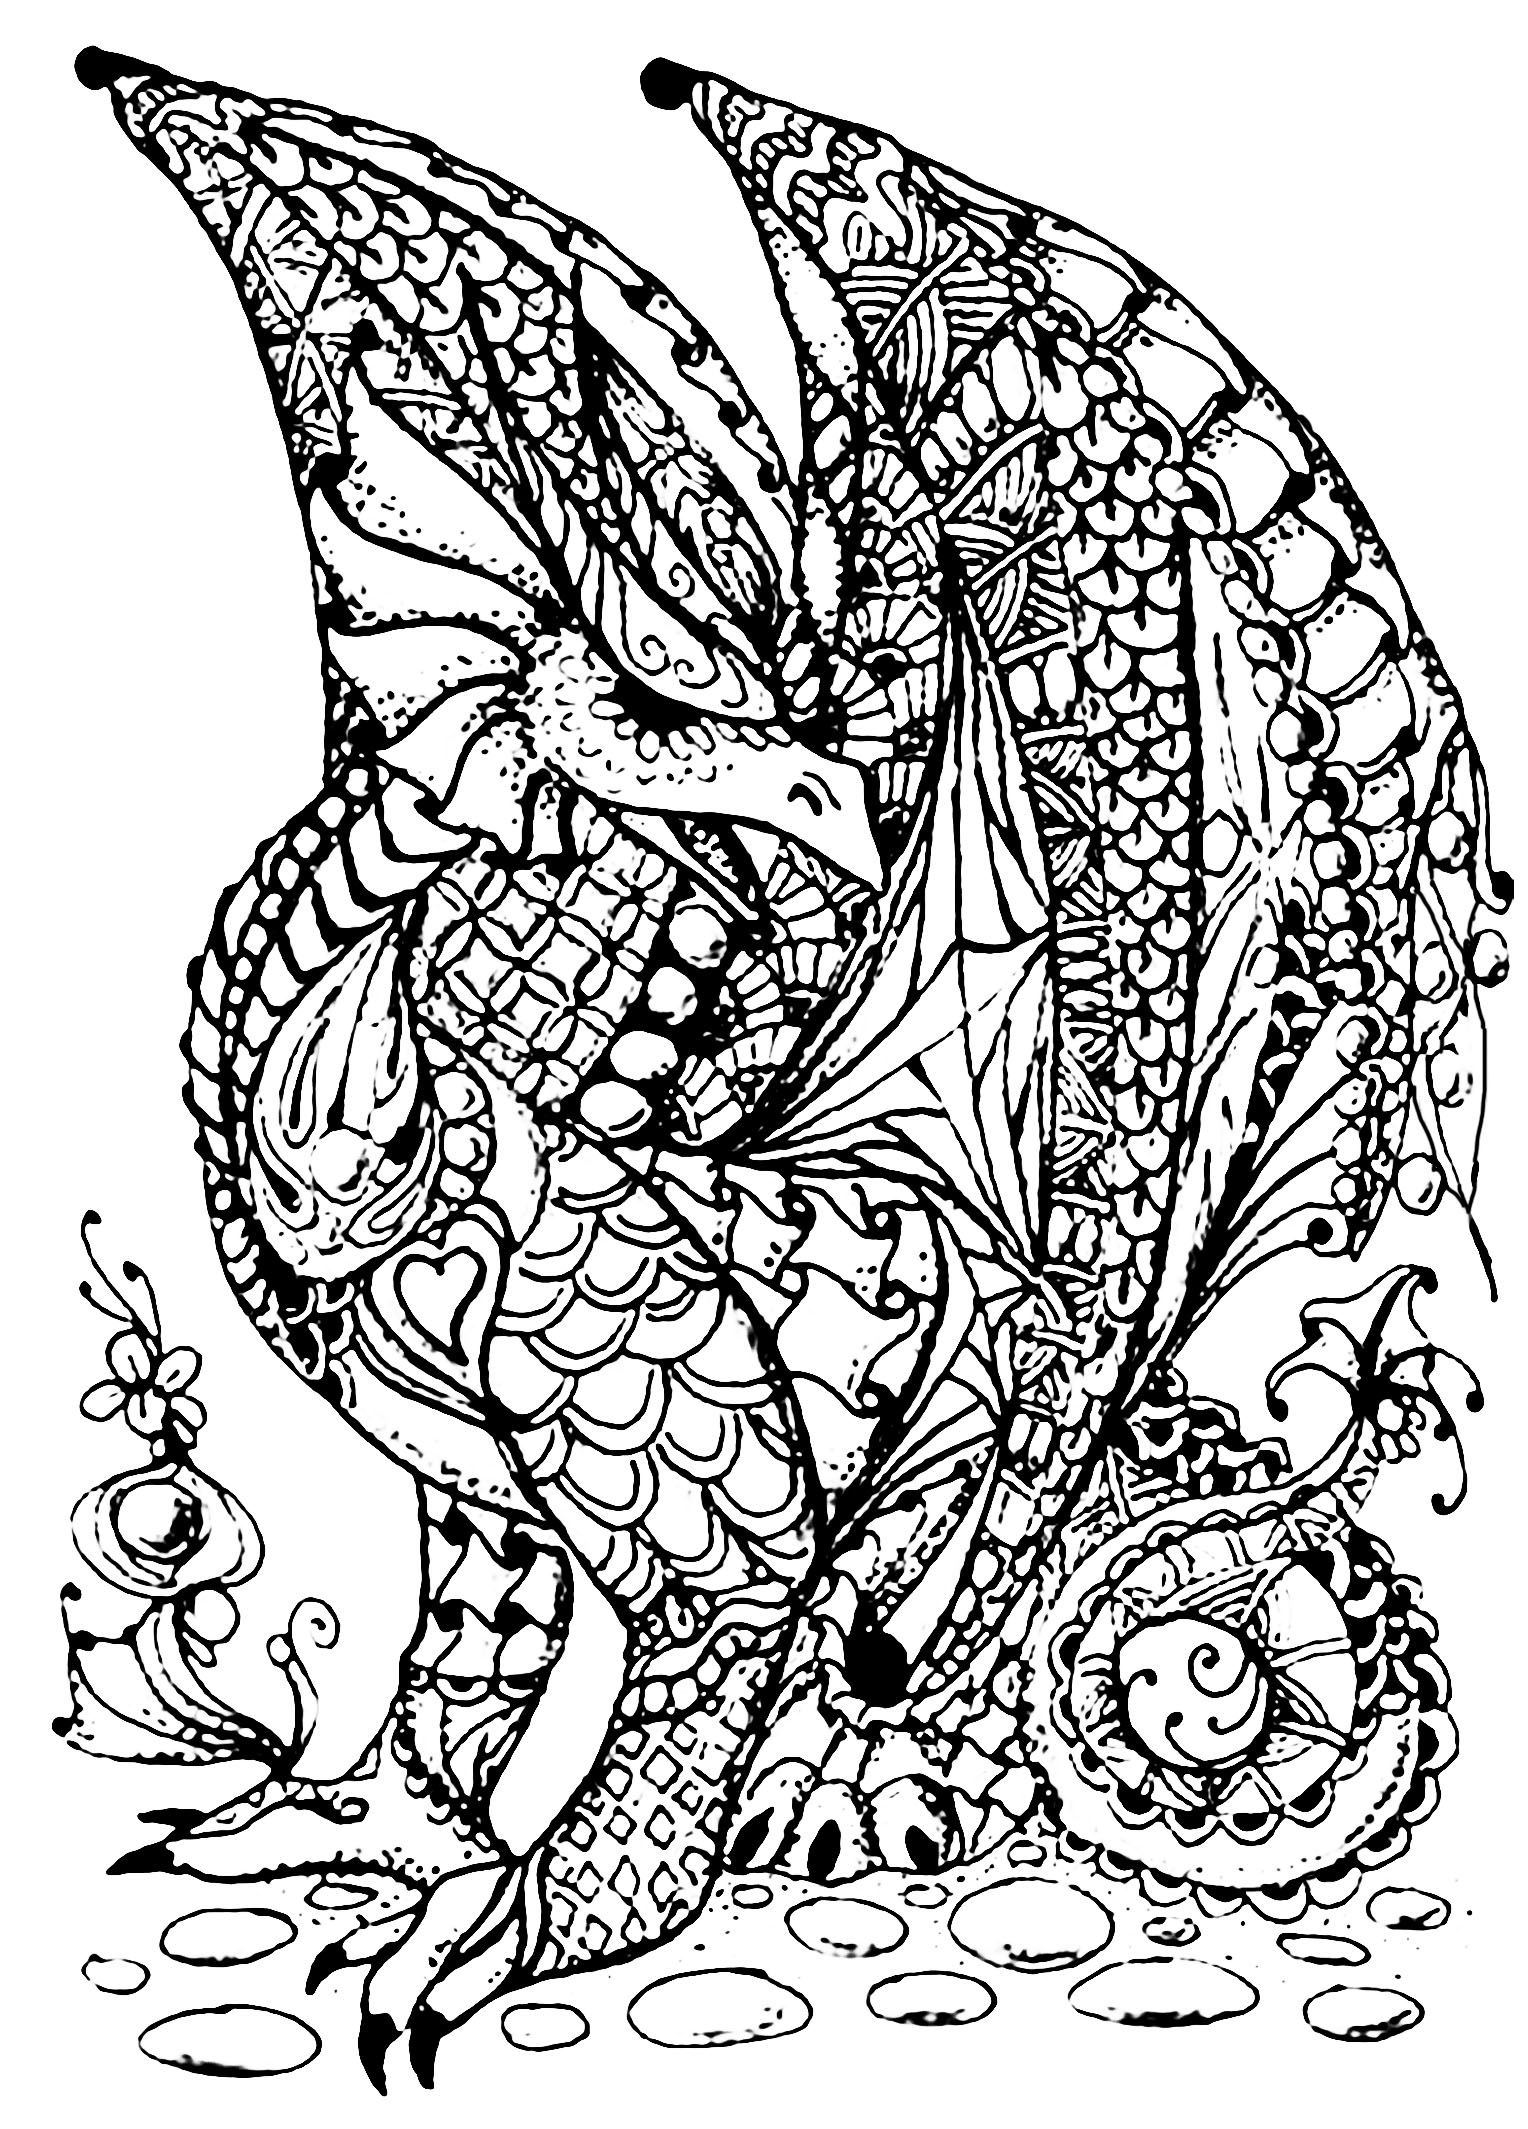 Dragon complexes à colorier